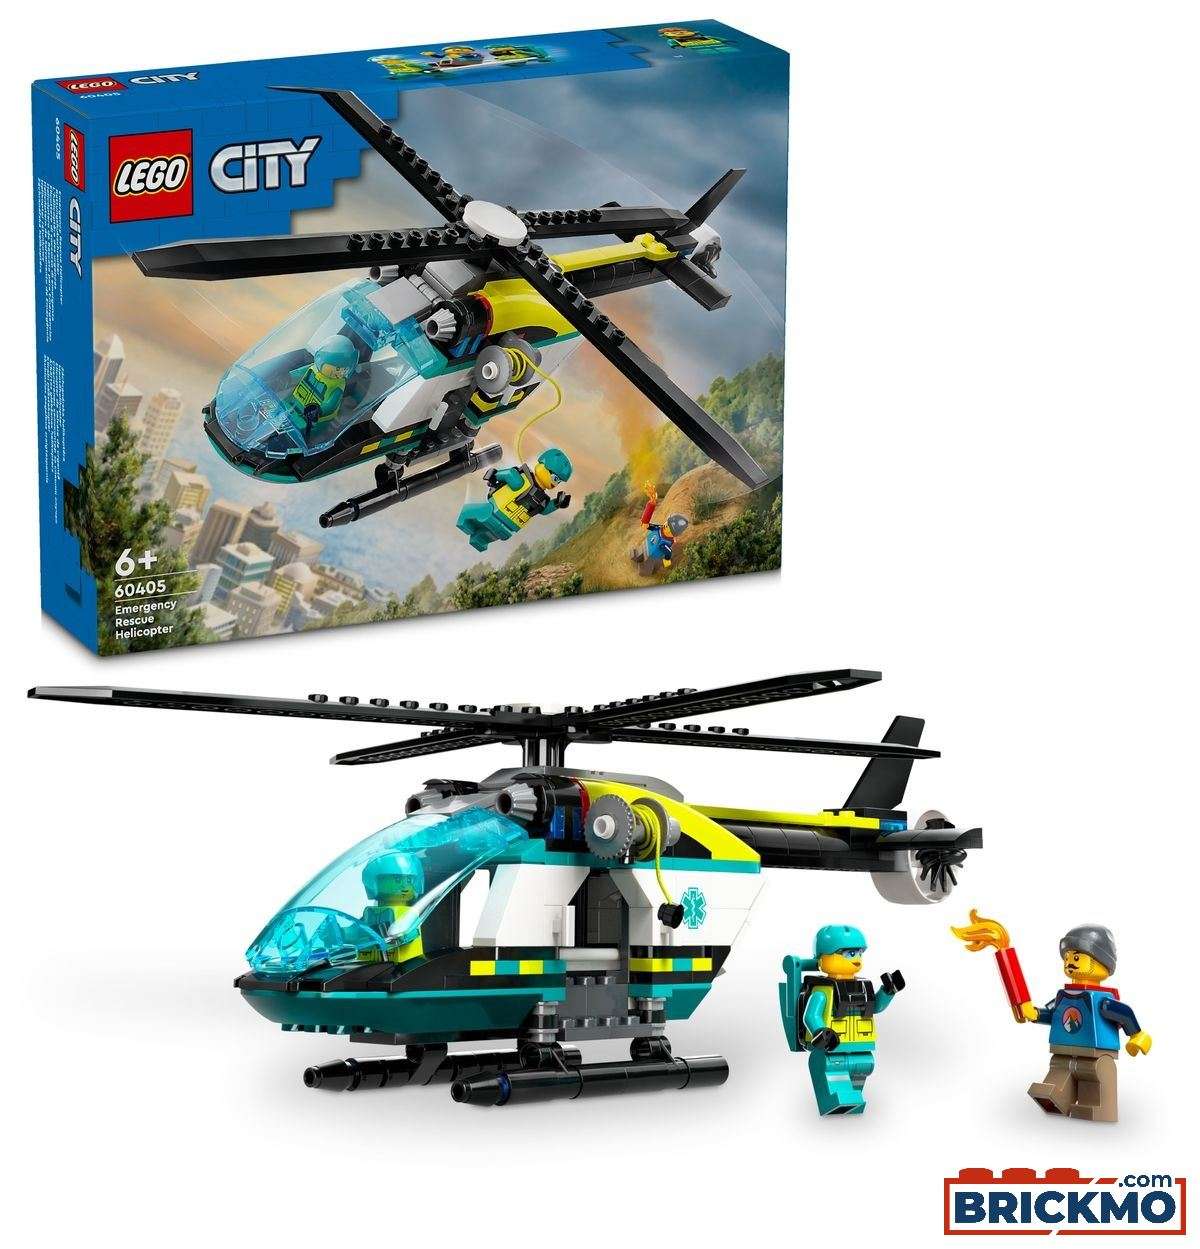 LEGO City 60405 Rettungshubschrauber 60405